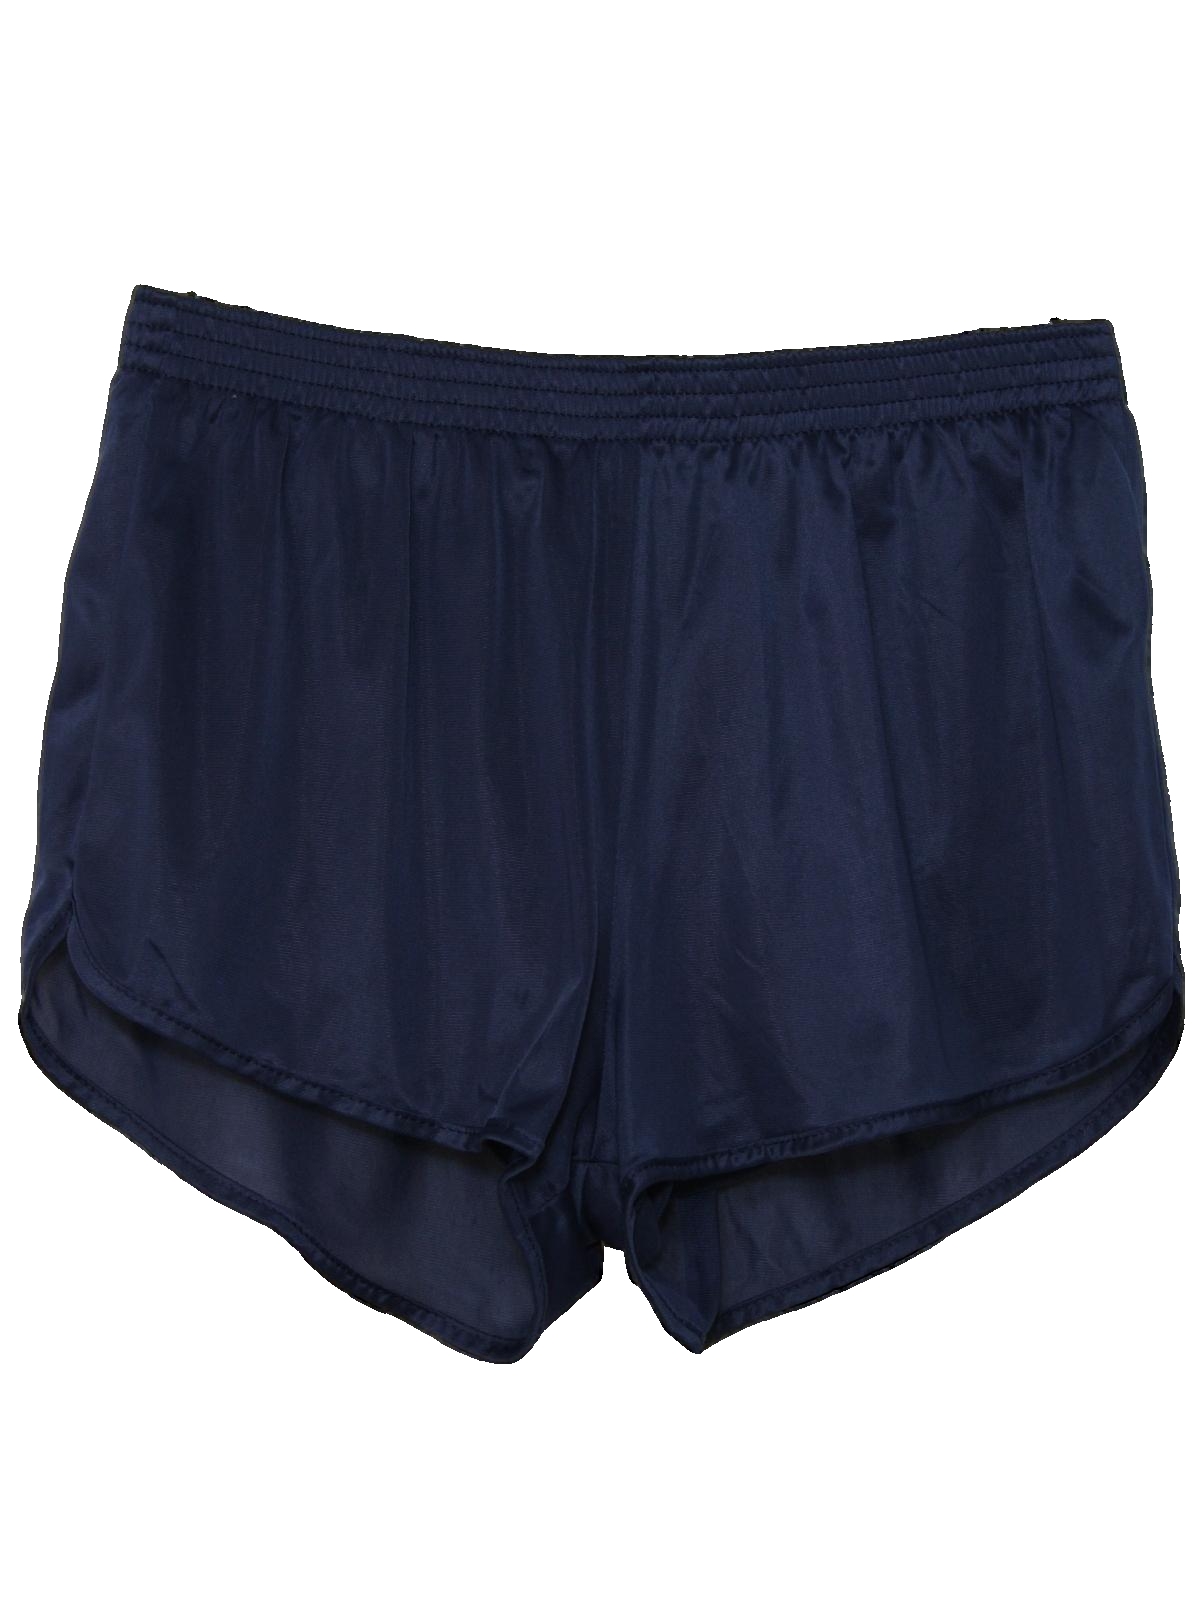 Retro 1980's Shorts (Soffe) : 80s -Soffe- Mens shiny midnight blue ...